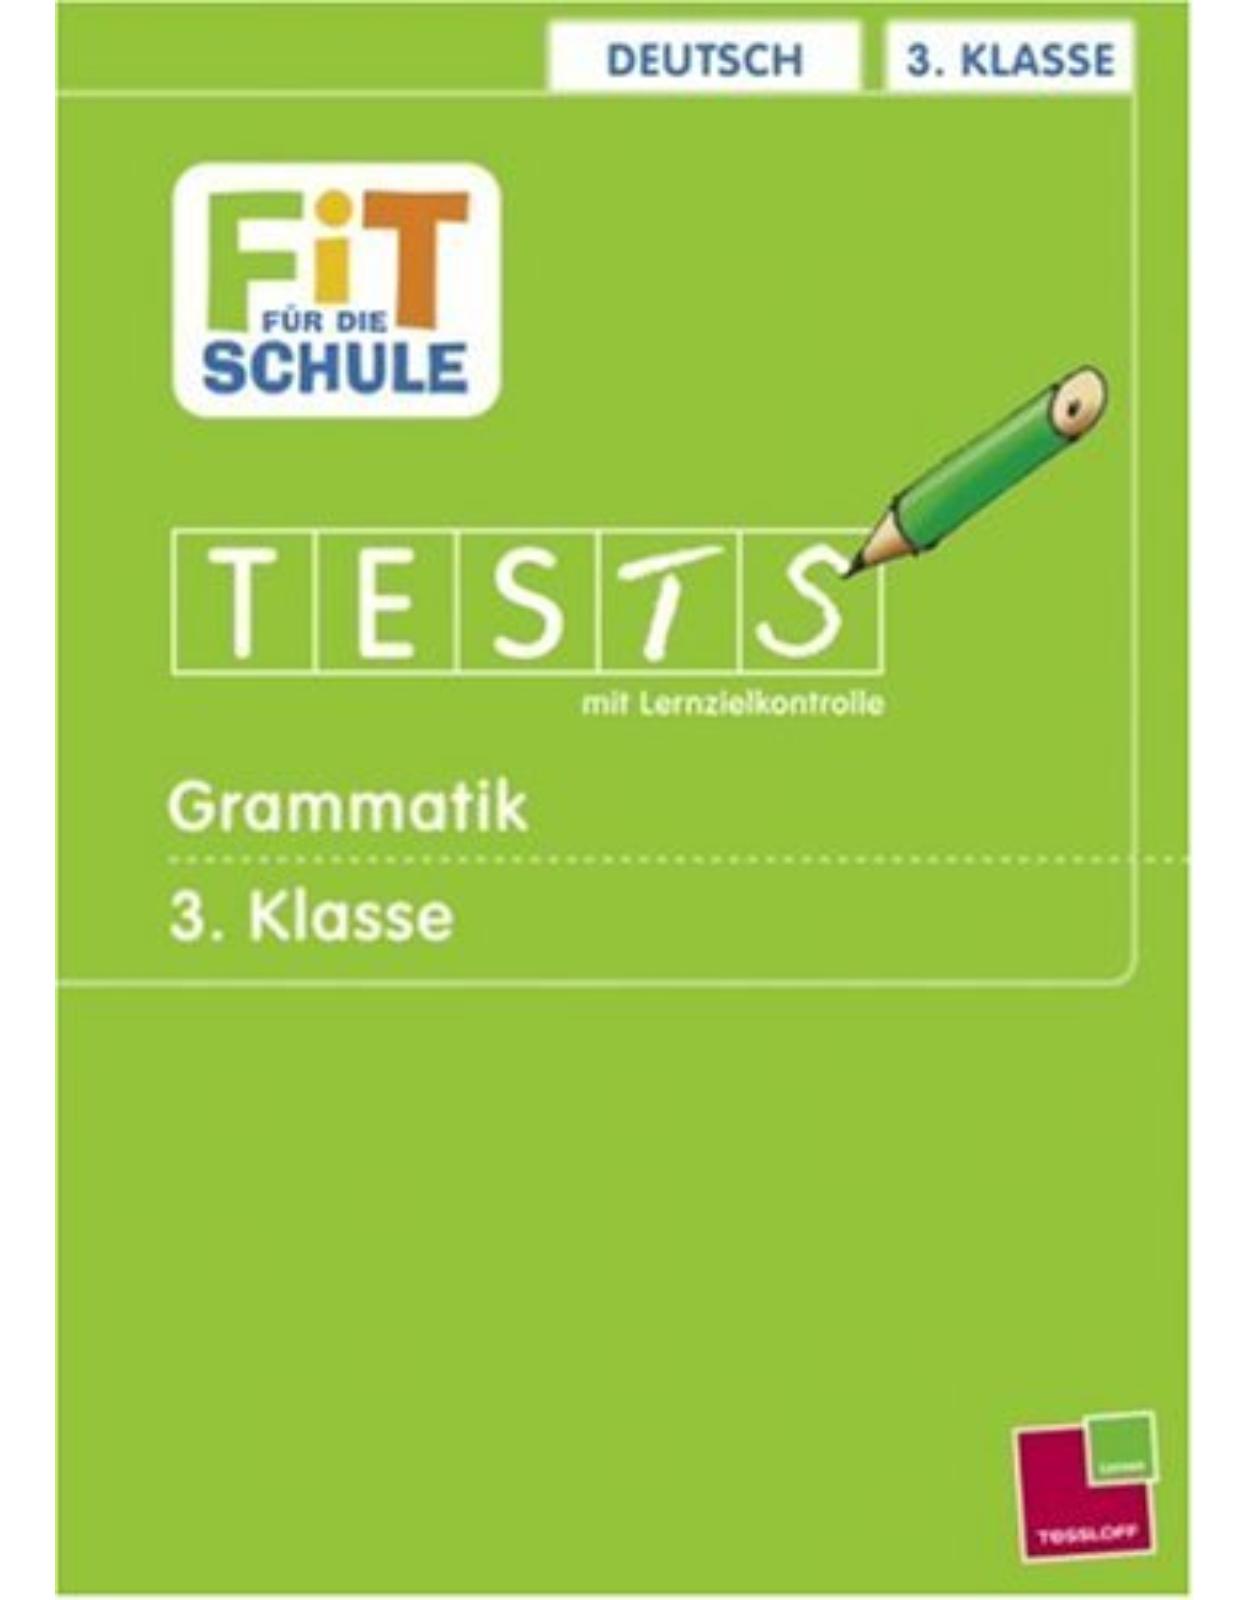 Deutsch 3. Klasse Grammatik: Tests mit Lernzielkontrolle